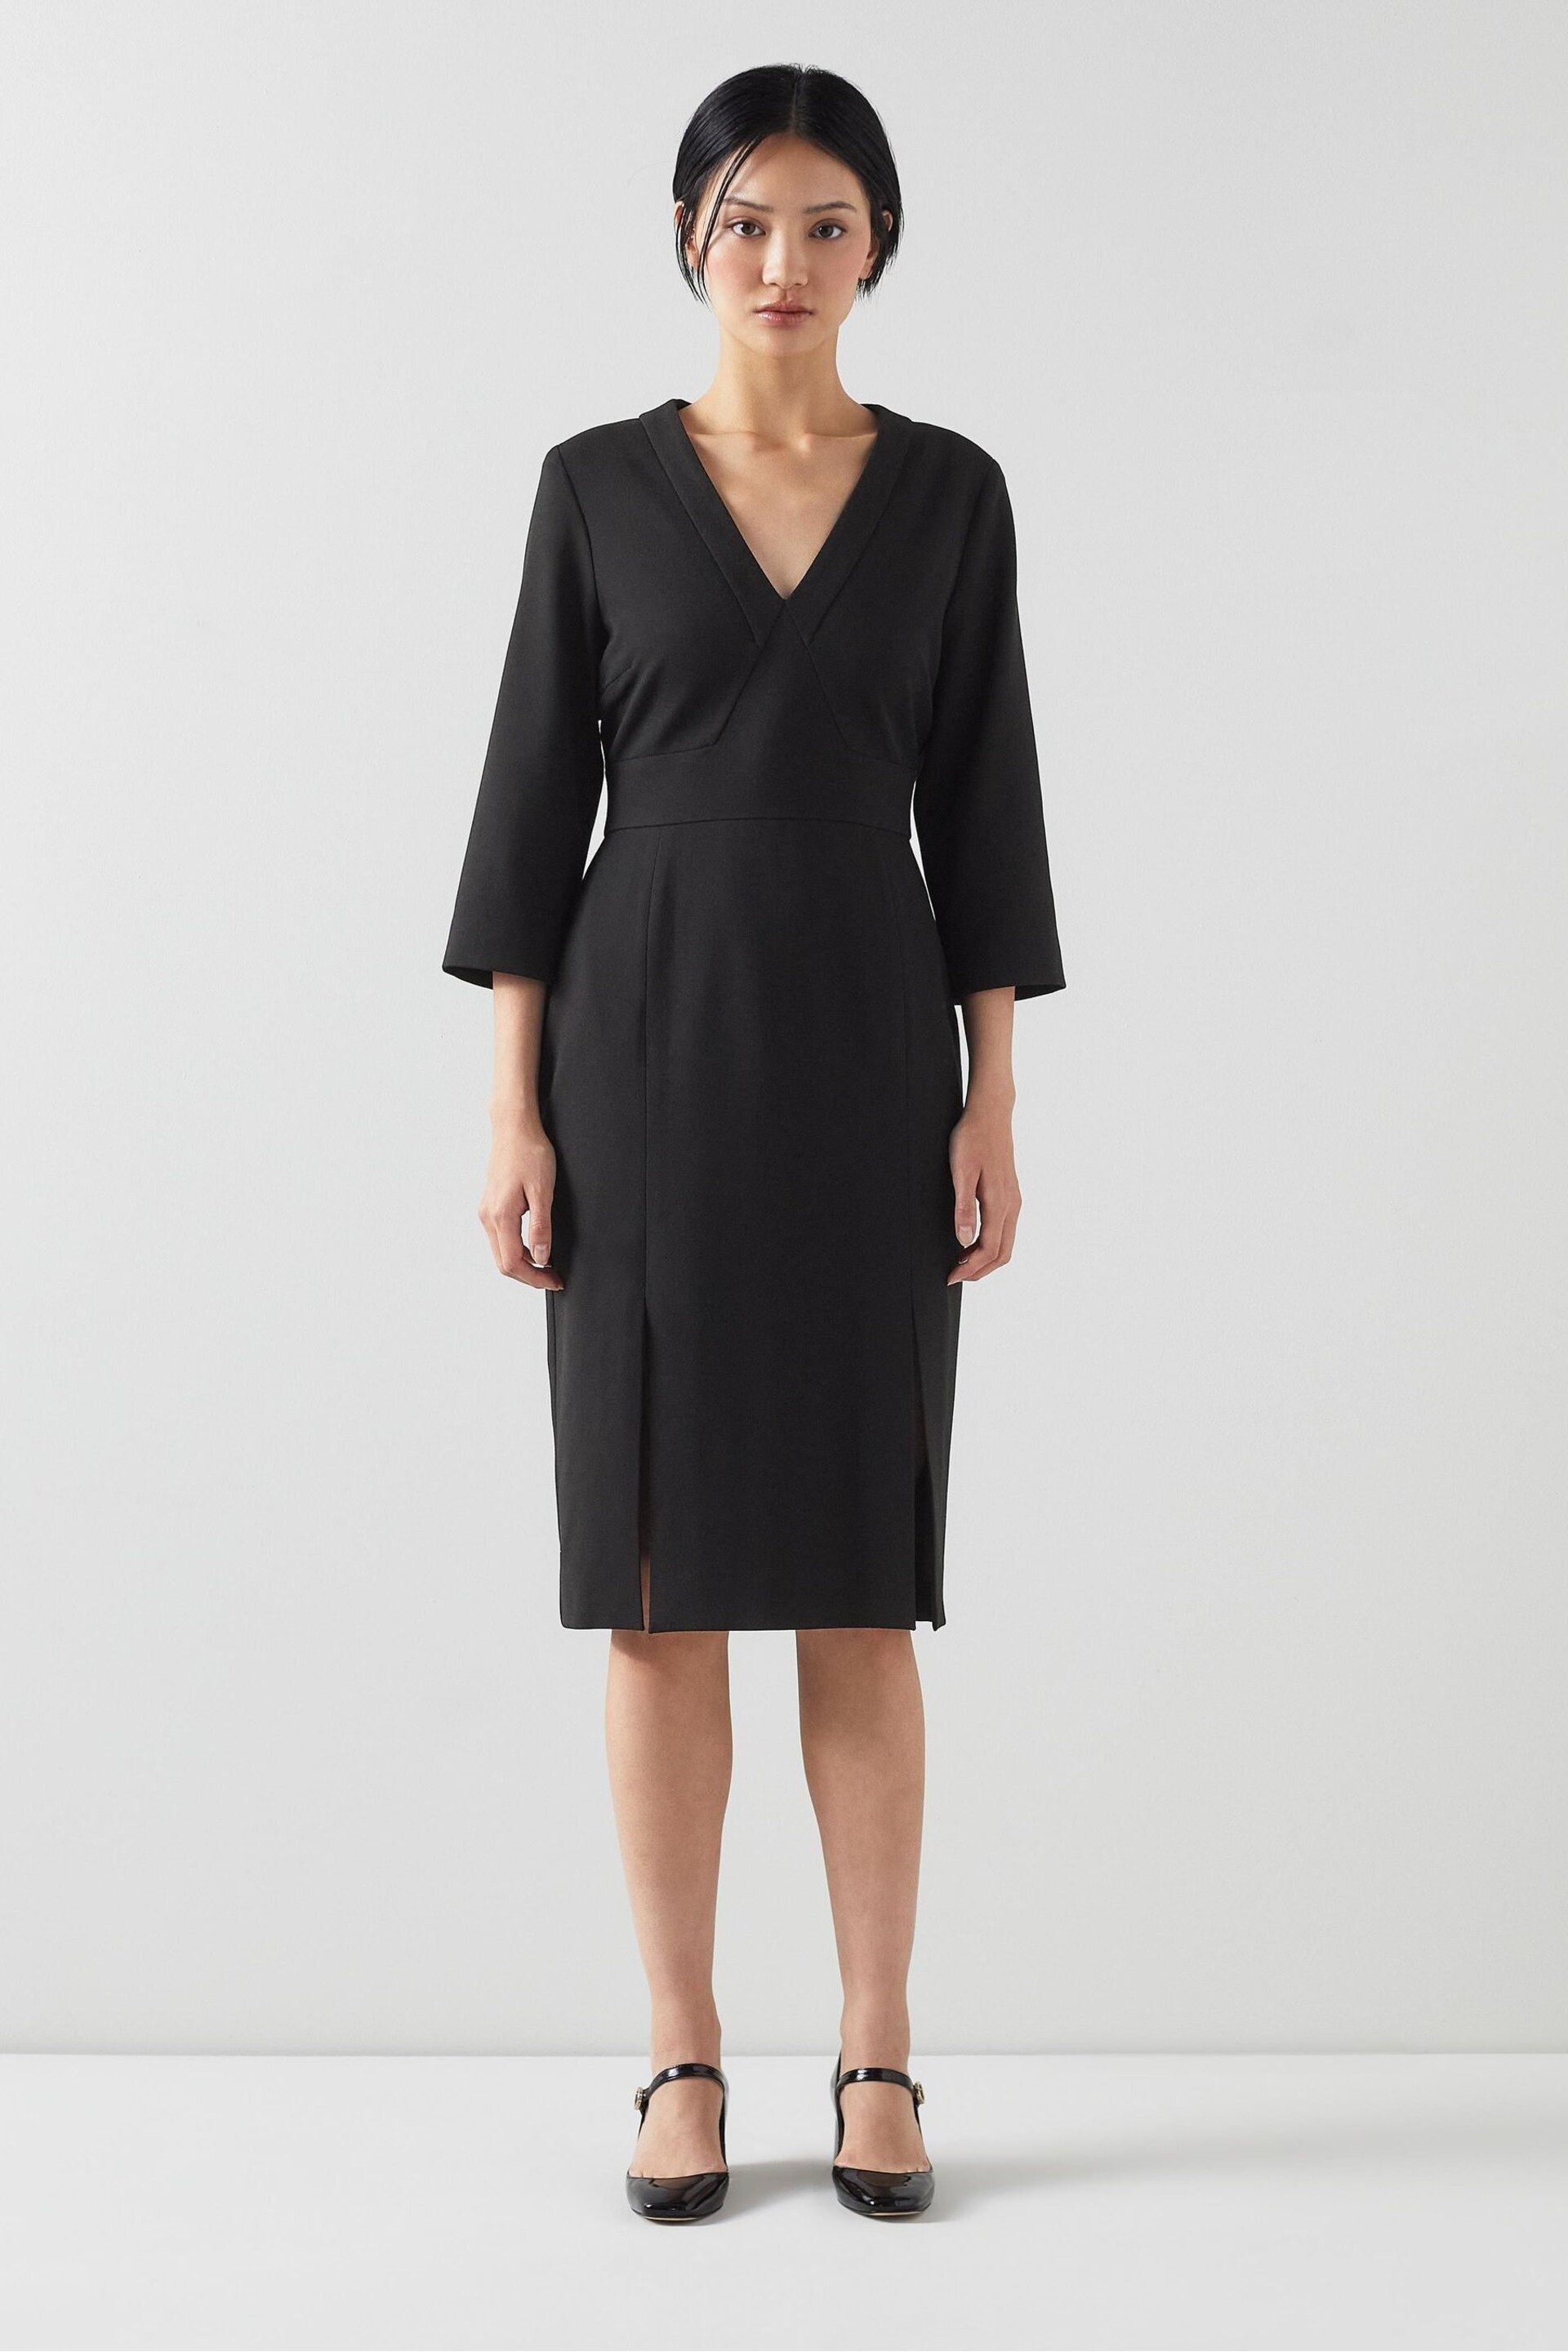 LK Bennett Sky Lenzing™ Ecovero™ Viscose Blend Crepe Dress - Image 1 of 3